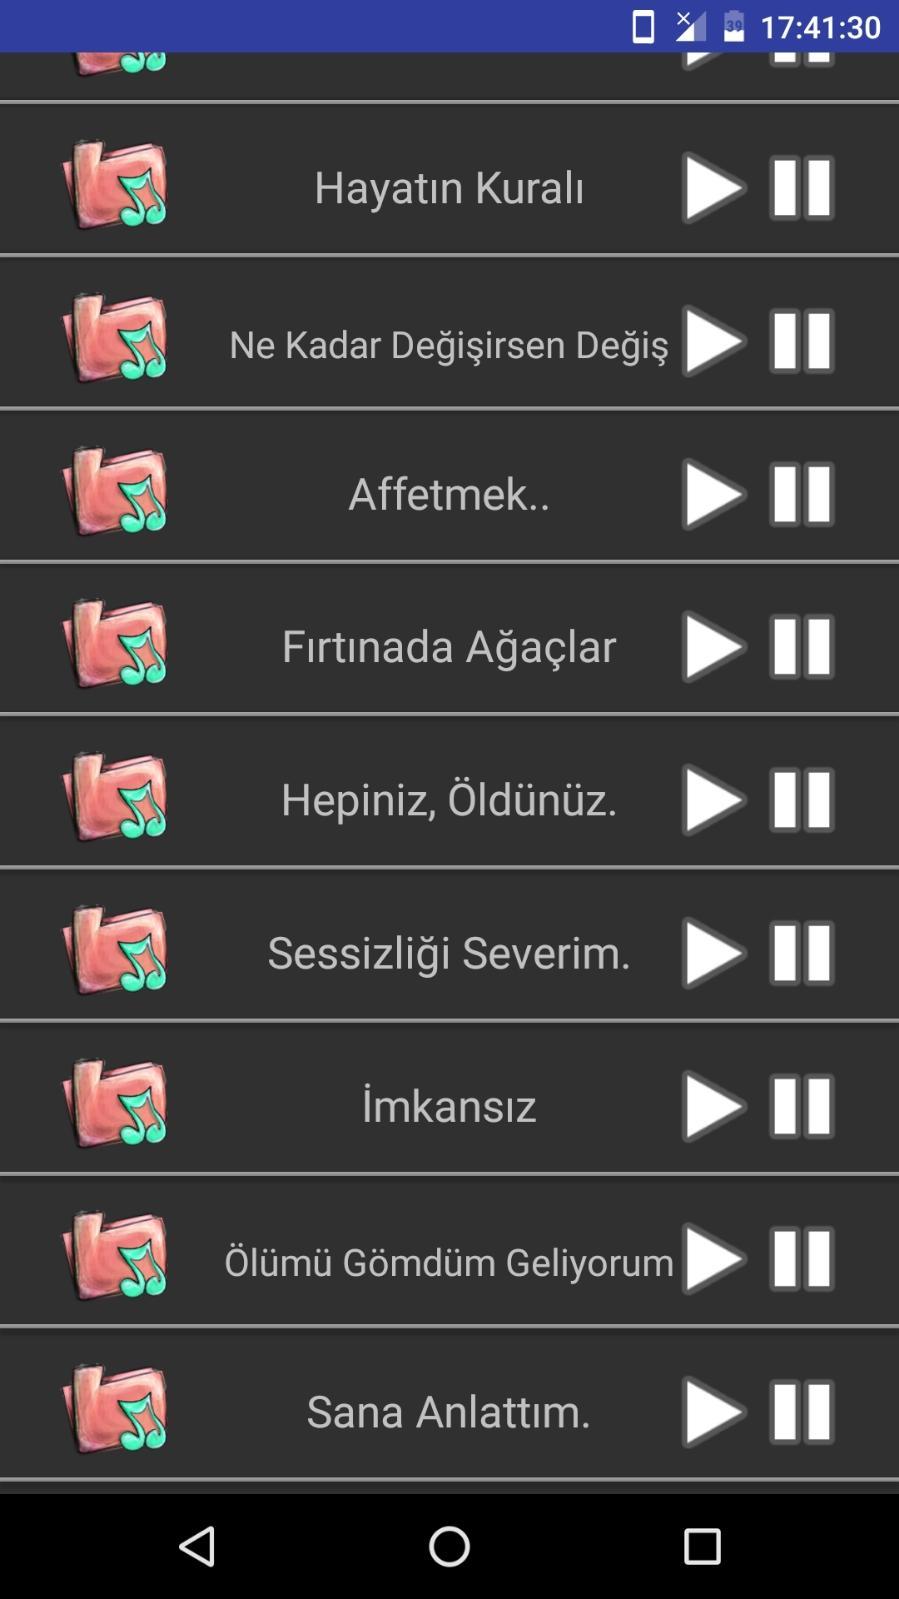 Ezel - Ramiz Dayı Replikleri для Андроид - скачать APK